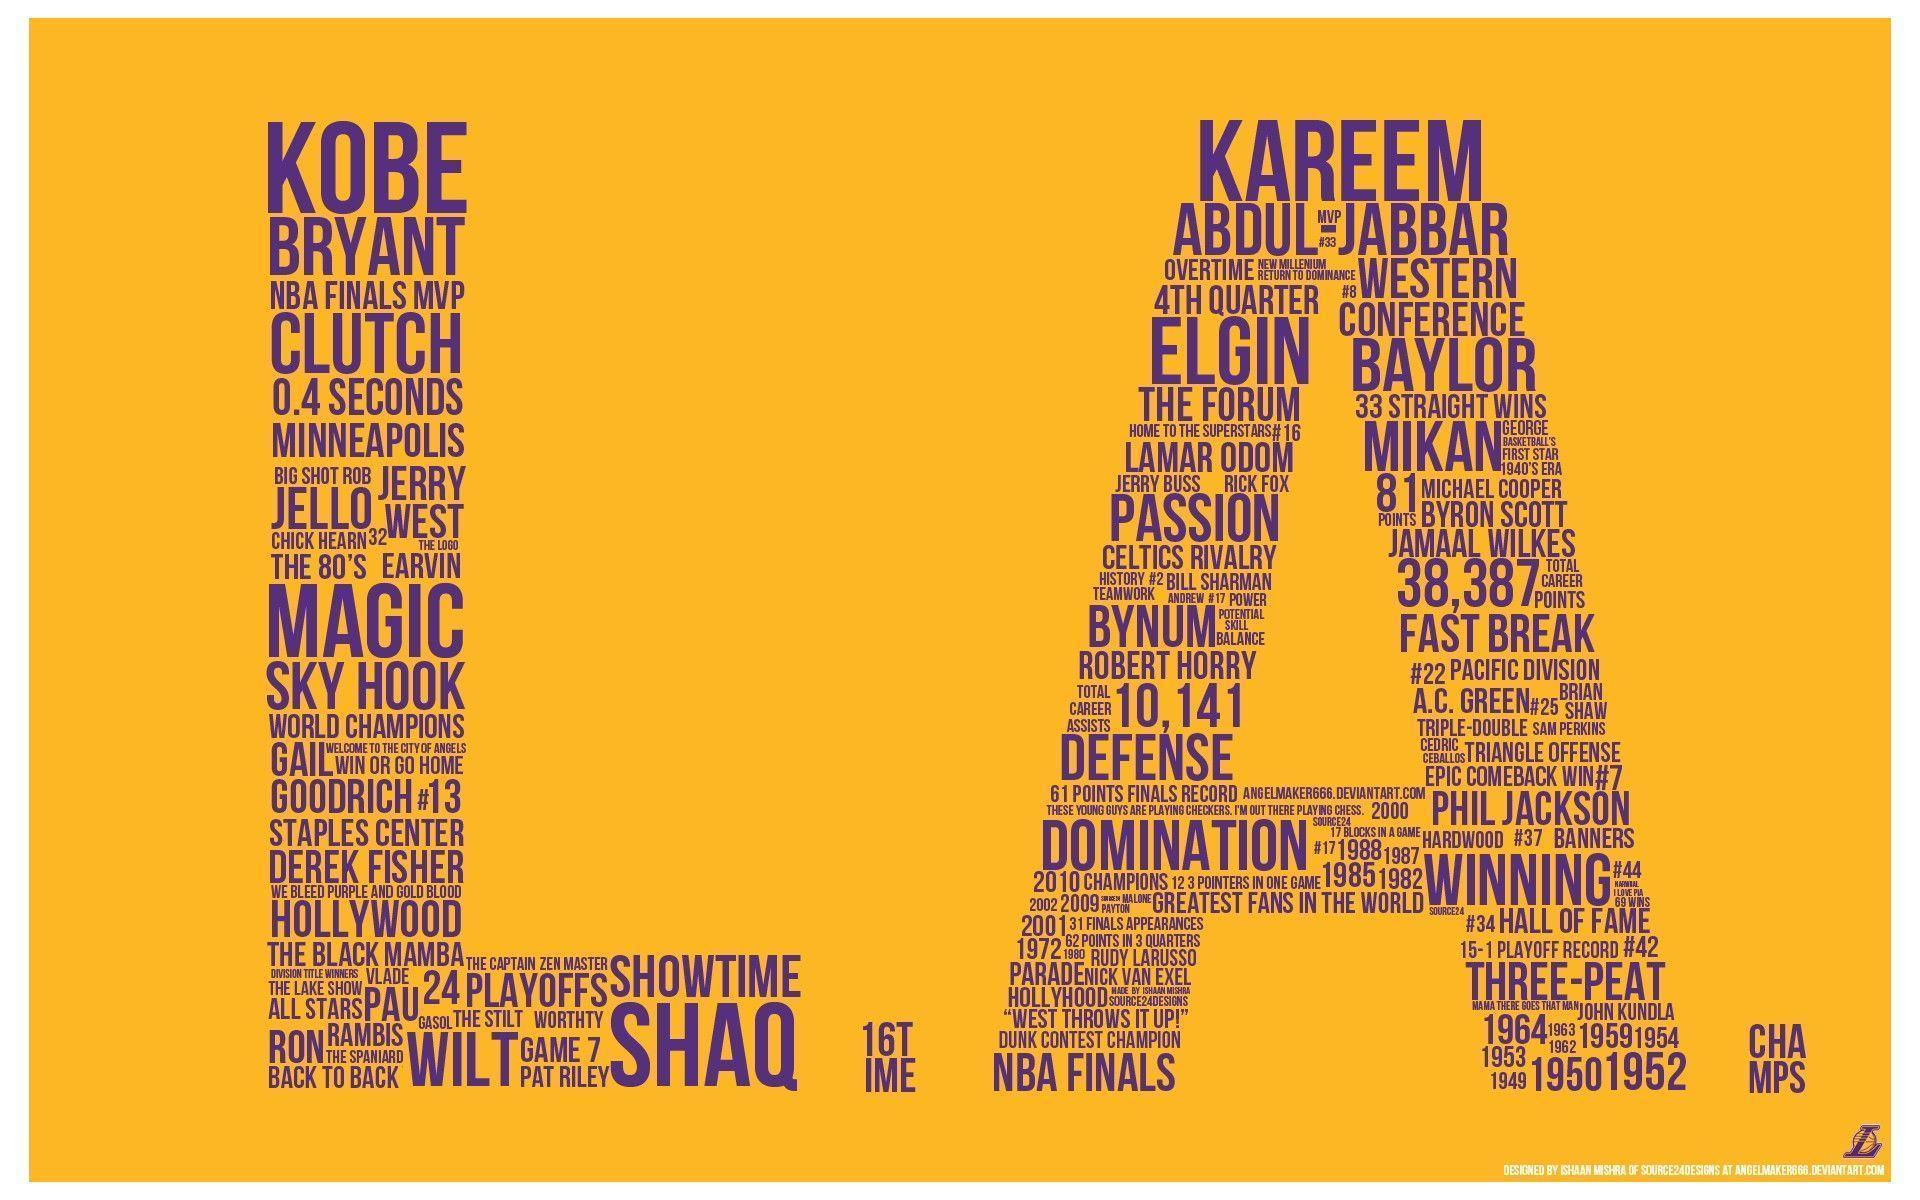 Los Angeles #California Lakers Kobe Bryant Magic Johnson Karen